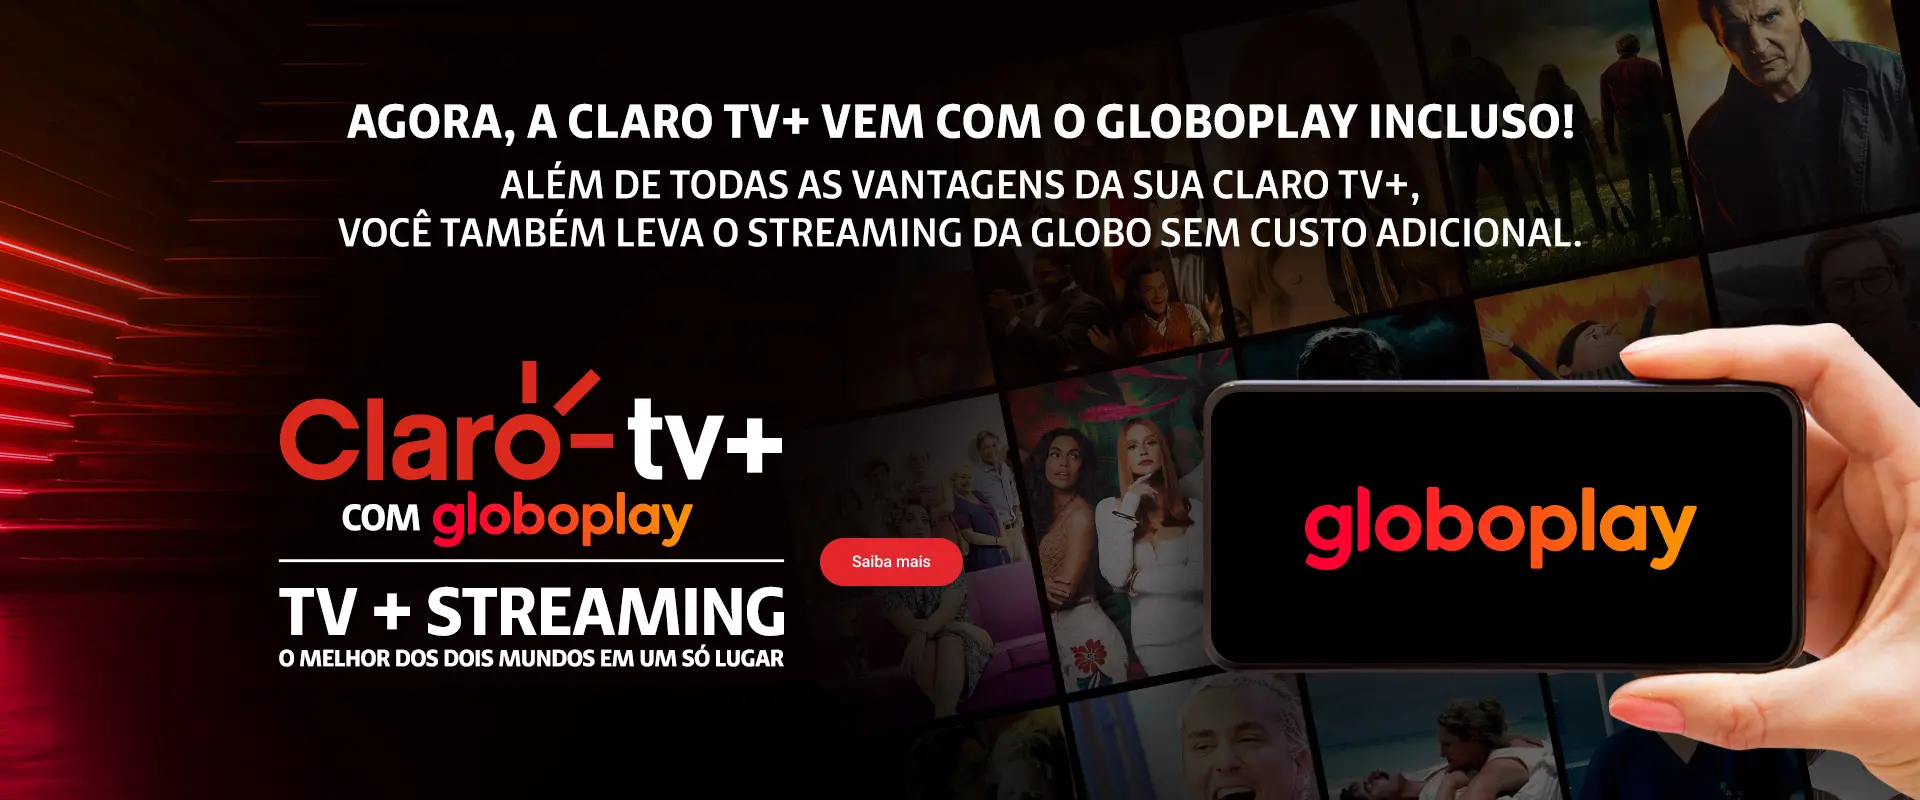 Claro tv+ com Assinatura Globoplay inclusa